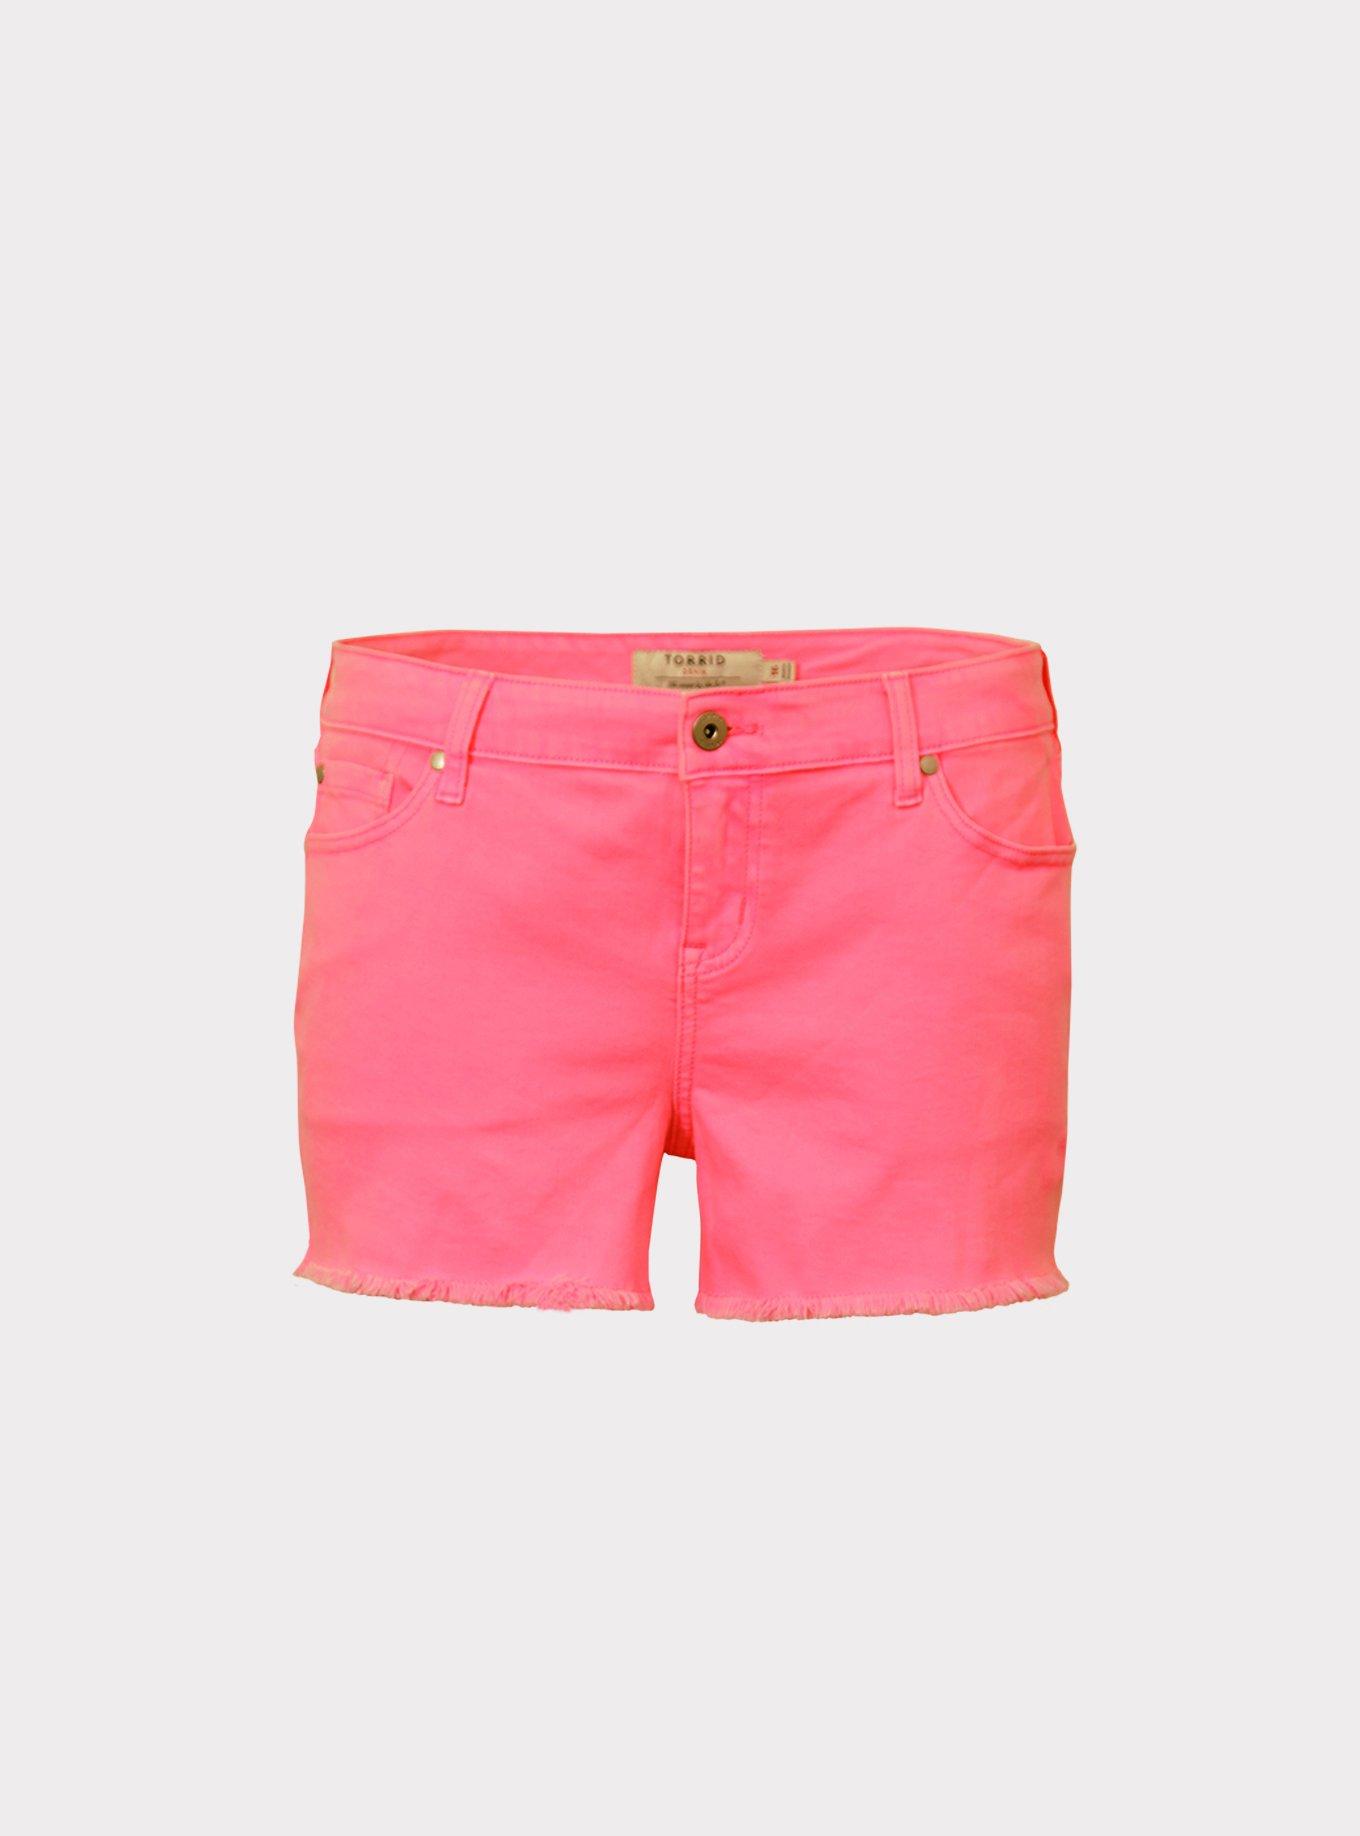 PSD Womens Boy Short Neon Pink Rose Size XL (30 to 31 Waist)